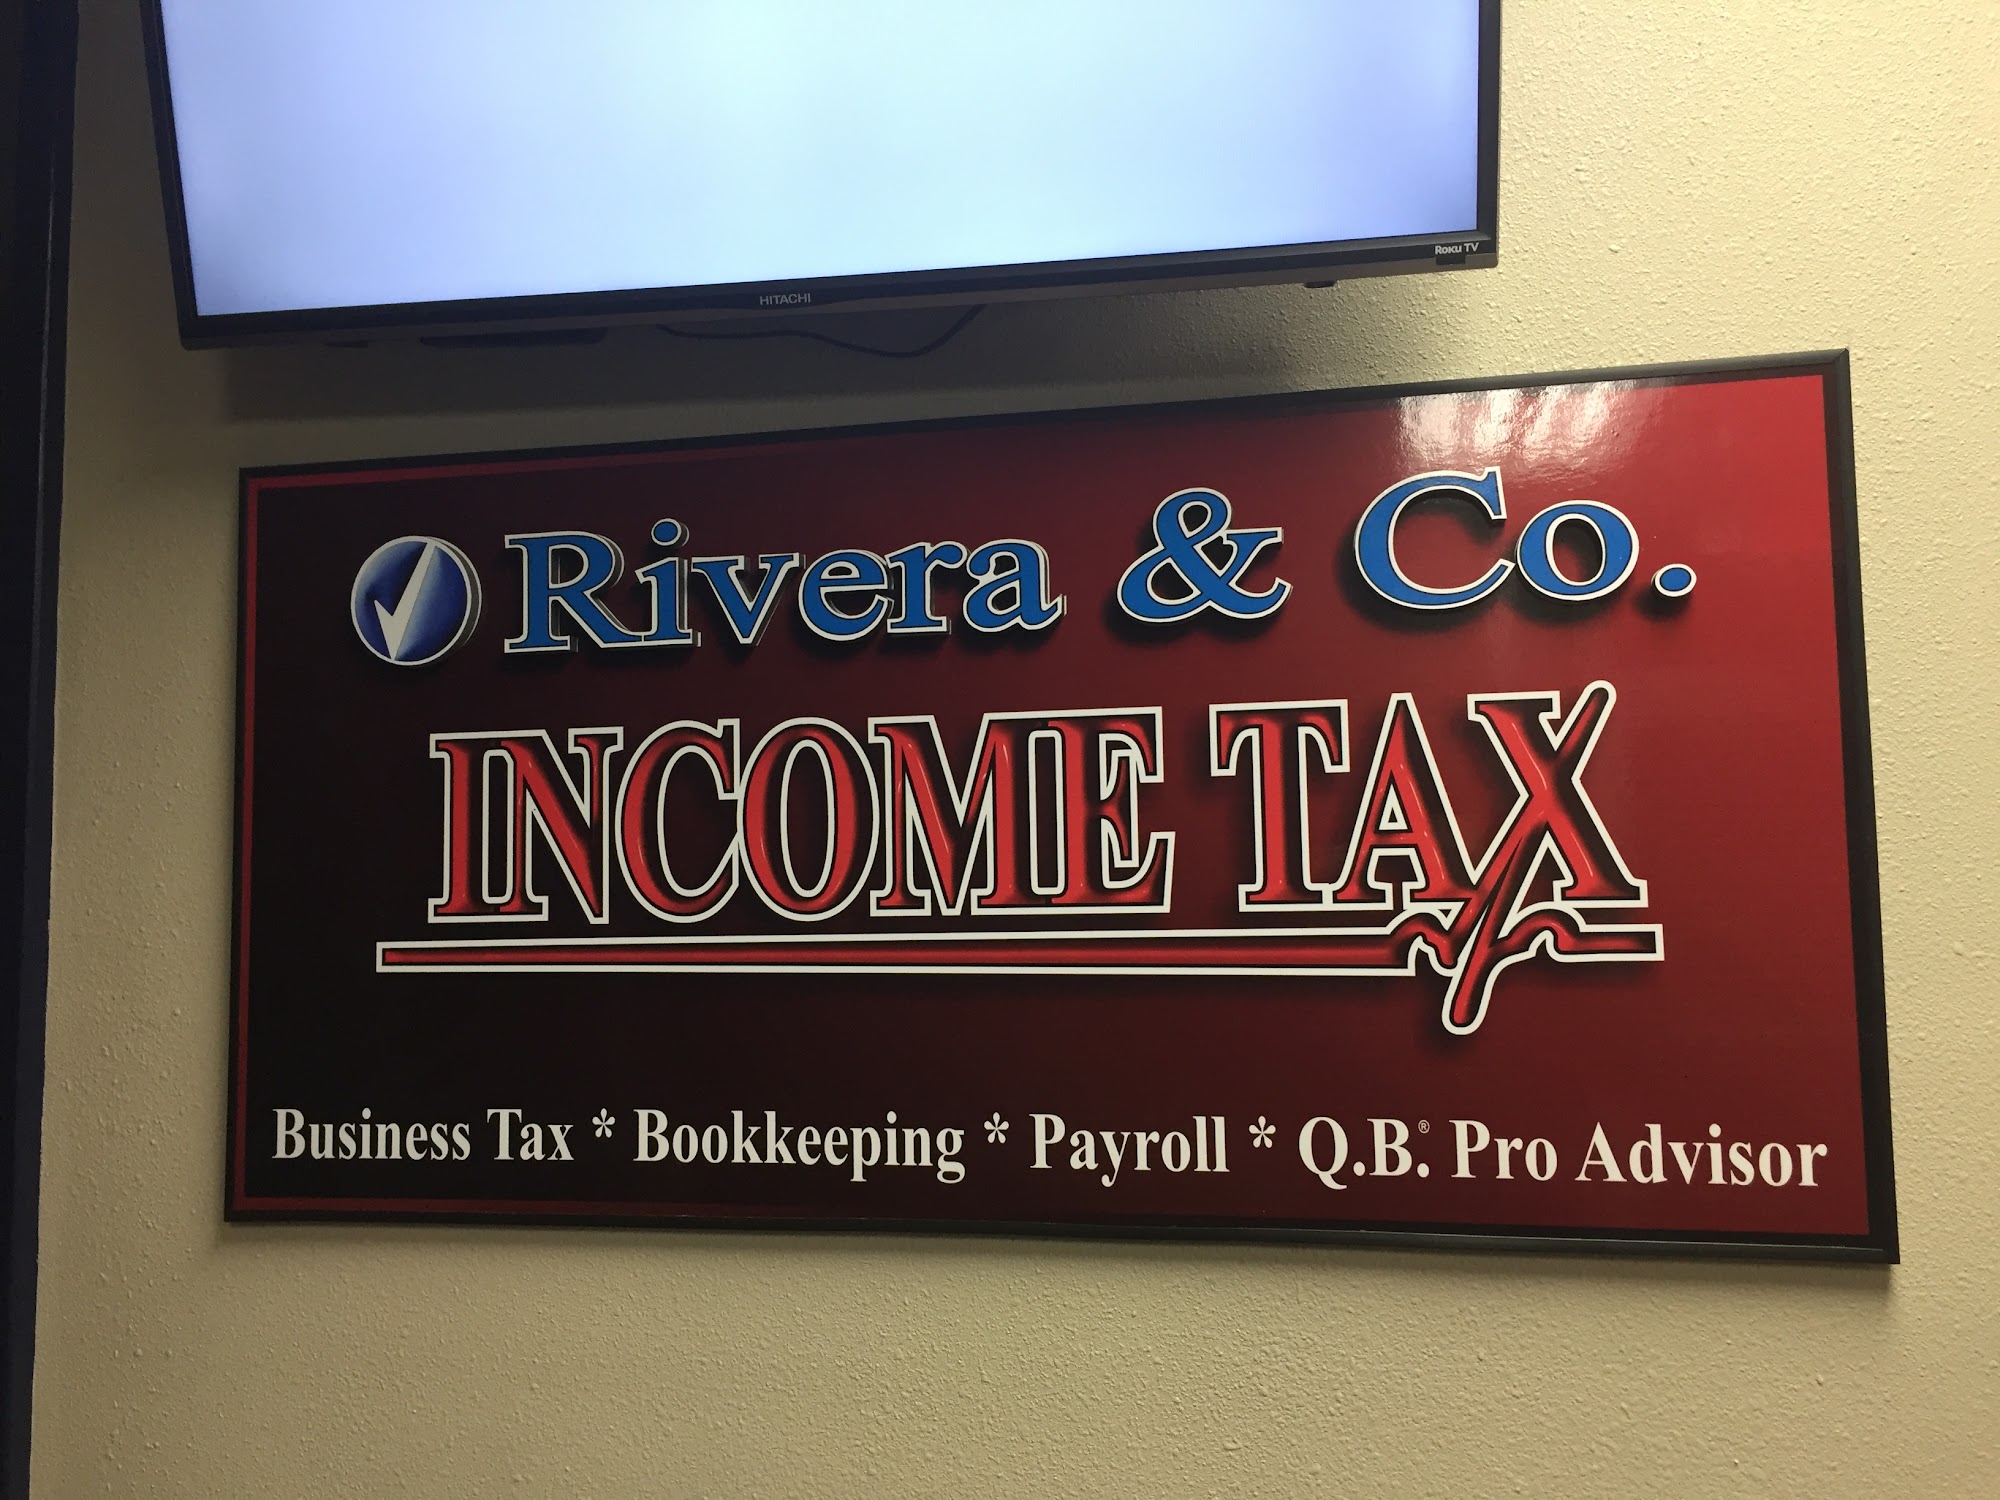 Rivera & Co. Income Tax